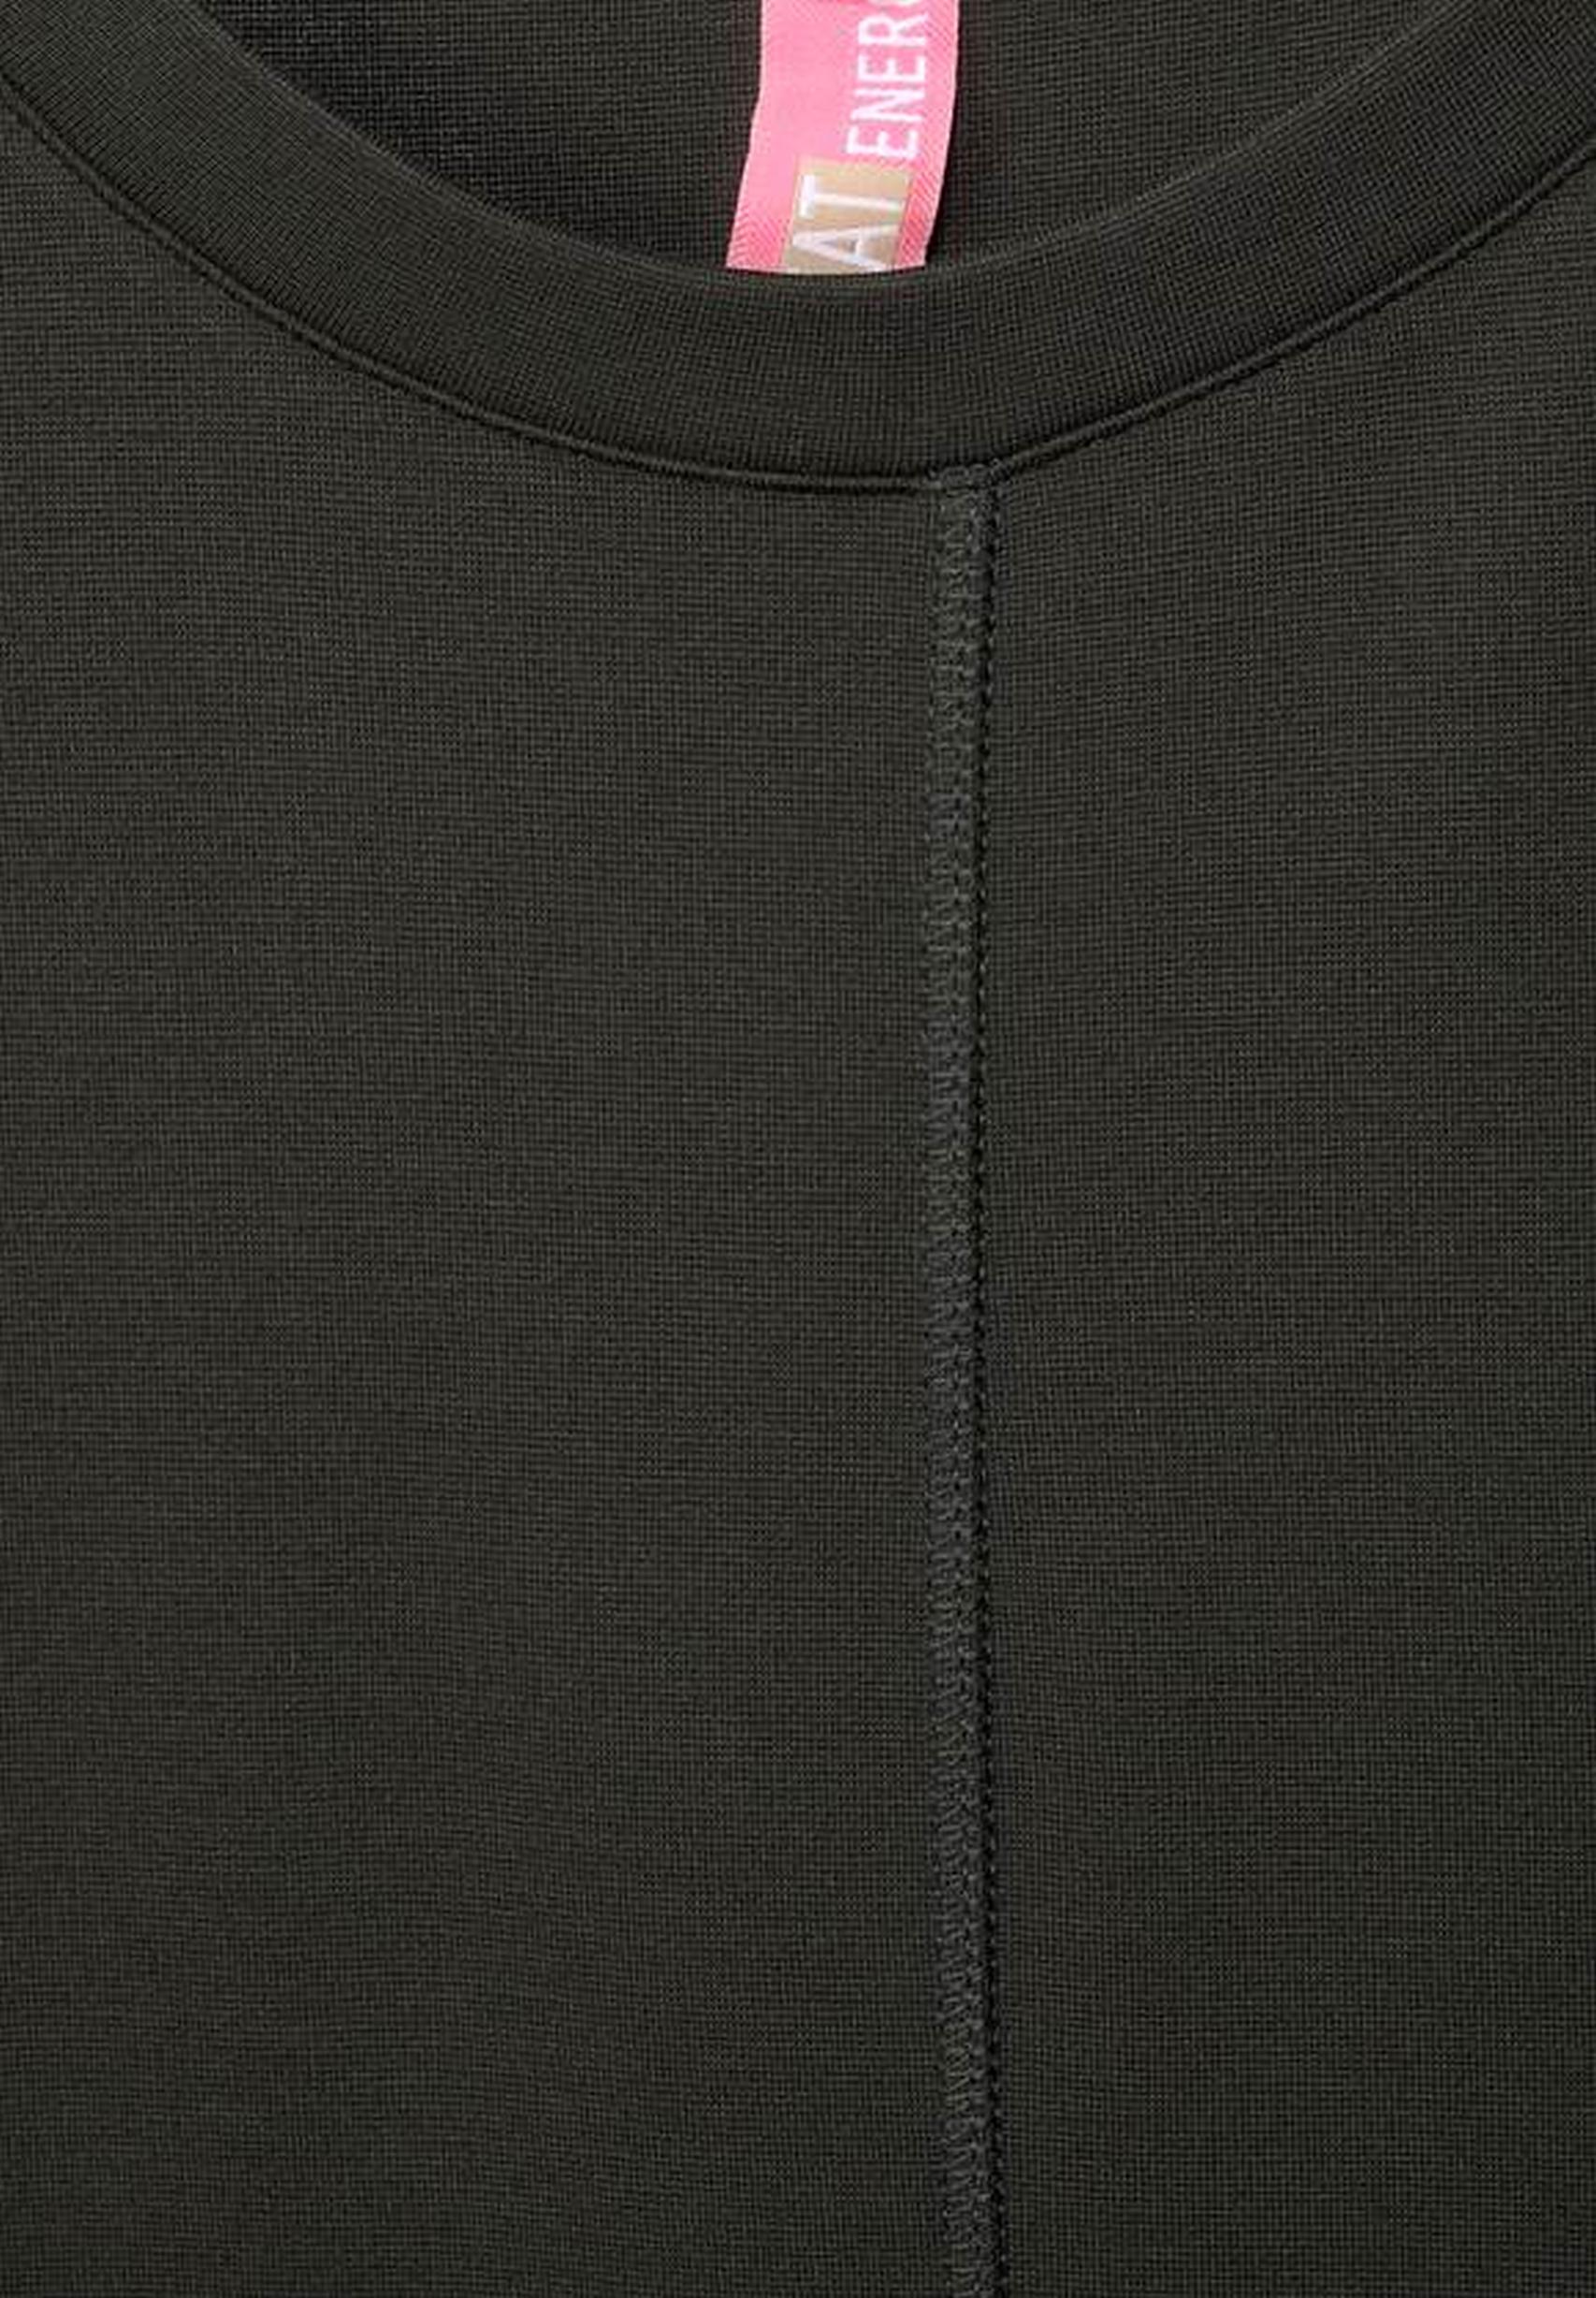 Modisches Jerseykleid aus der Kollektion von Street One in bassy olive -  143166